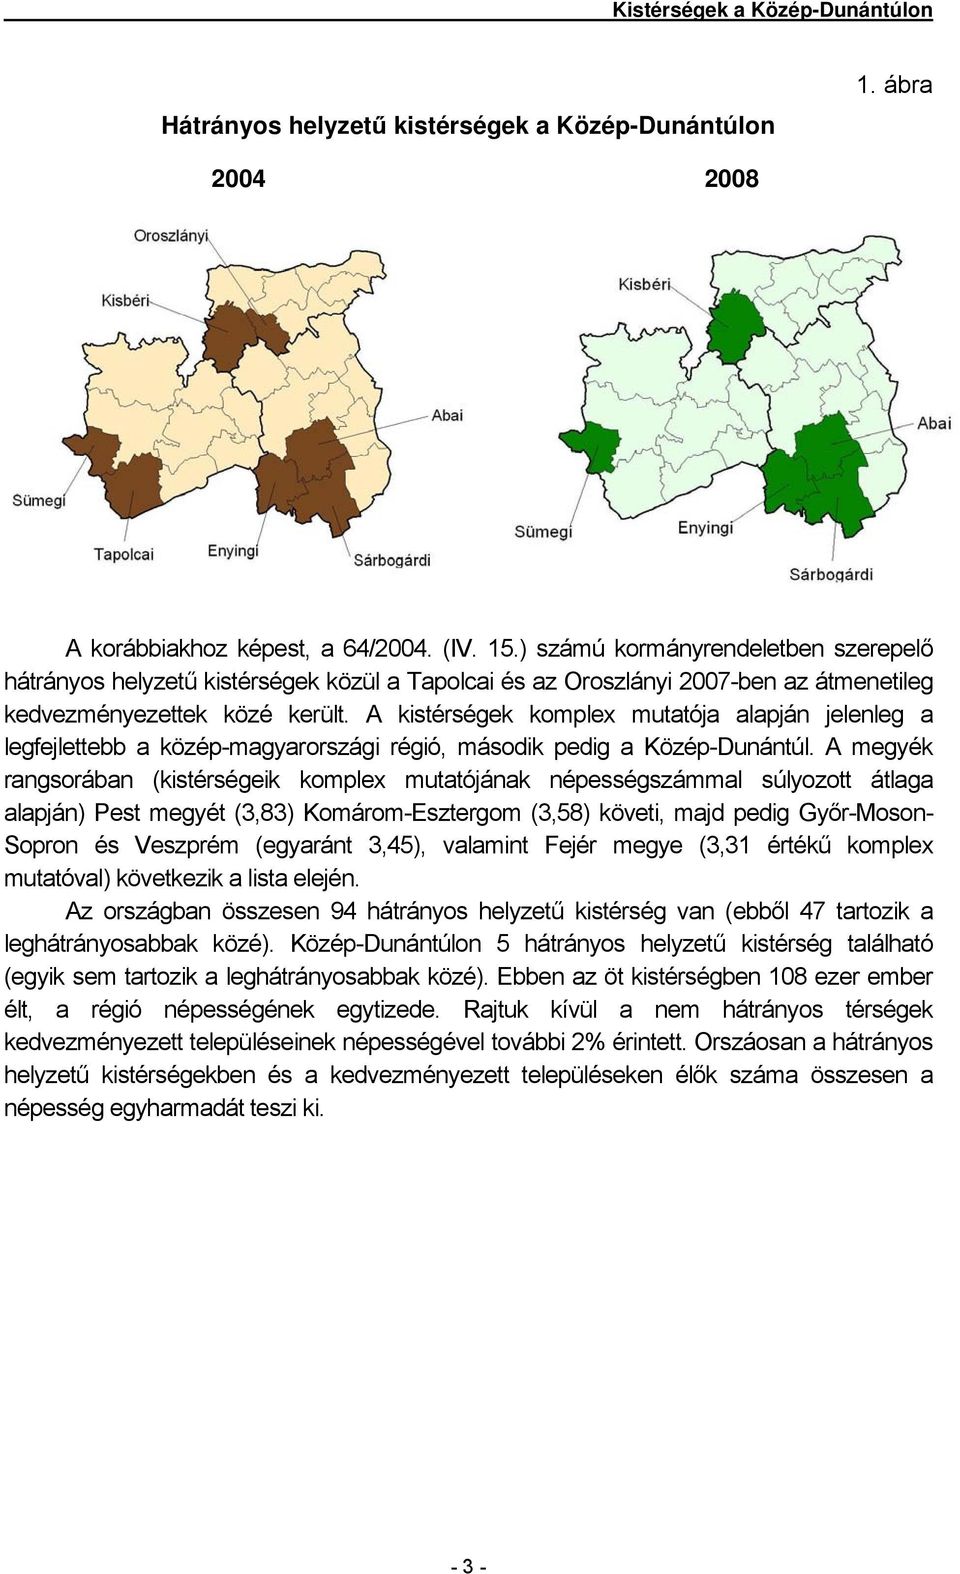 A kistérségek komplex mutatója alapján jelenleg a legfejlettebb a közép-magyarországi régió, második pedig a Közép-Dunántúl.